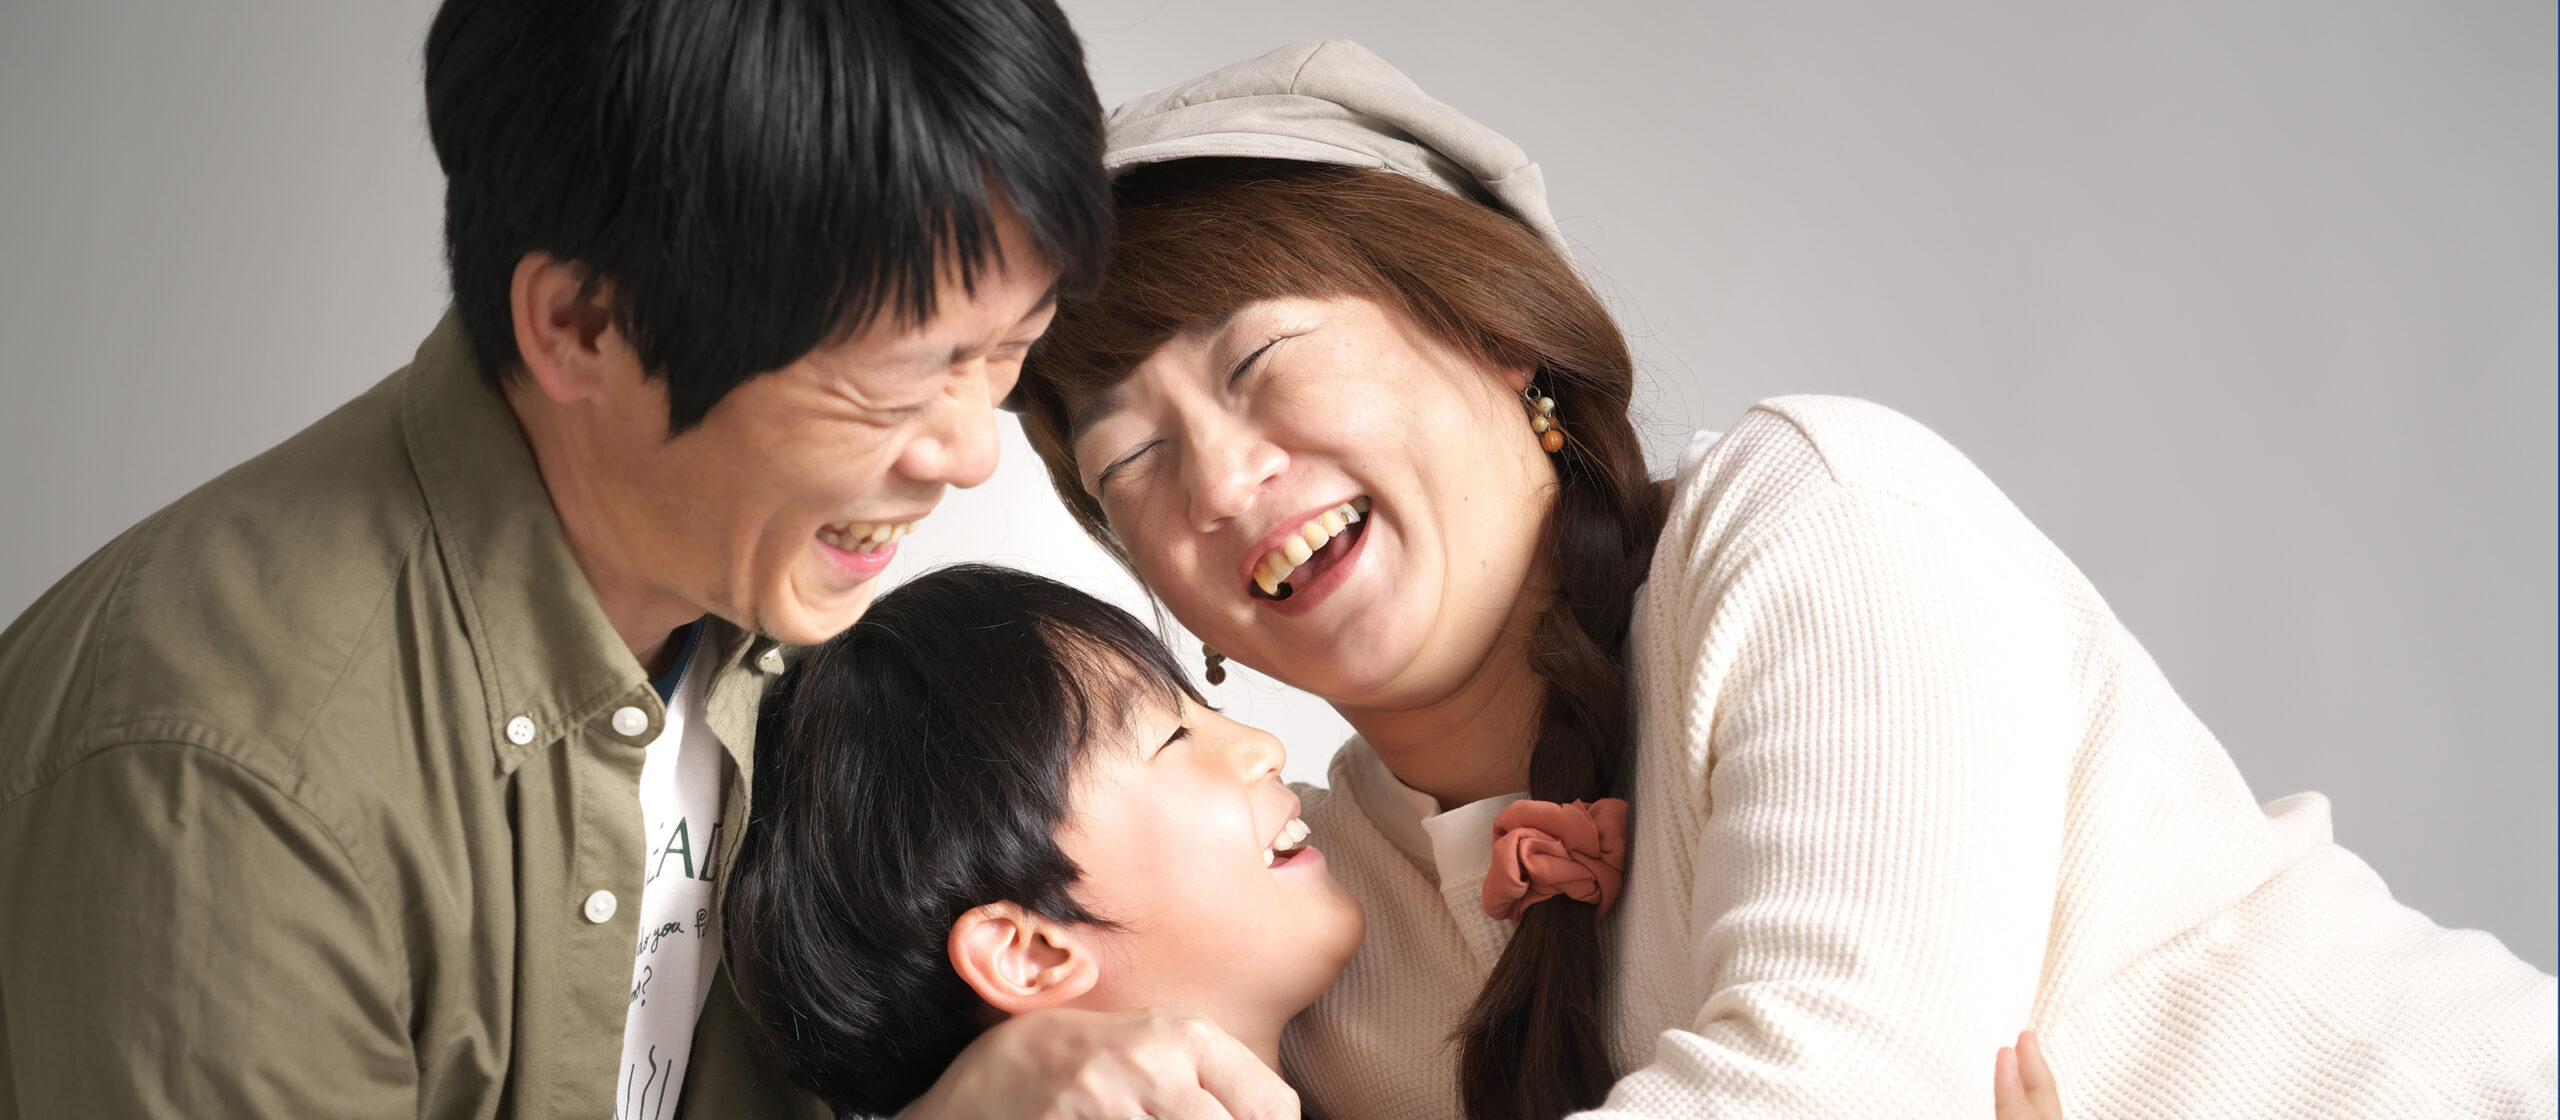 感動に満たされ、幸せがあふれる家族写真を。